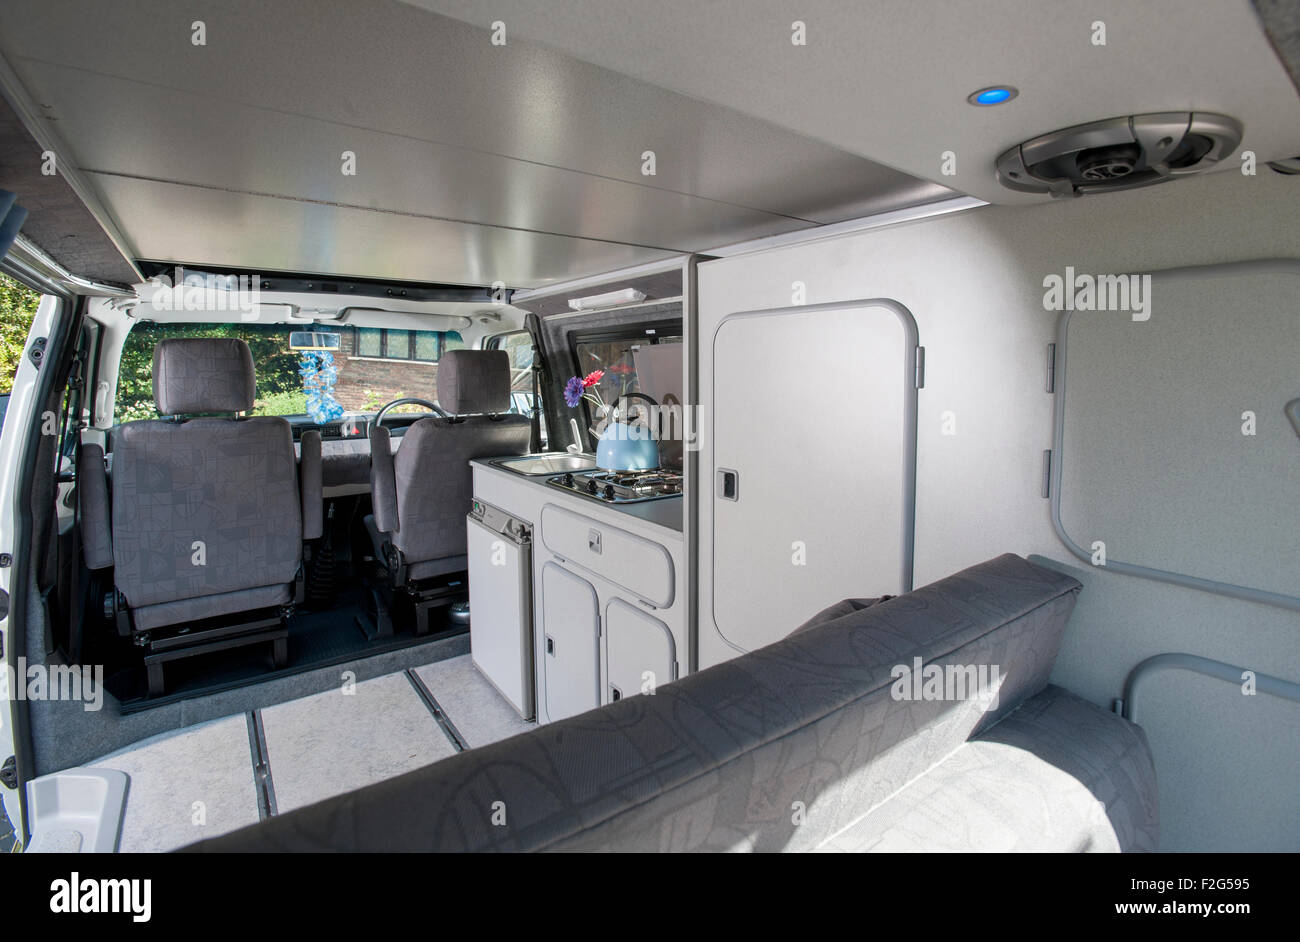 VW Volkswagen T4 camper van with pop top interior Stock Photo - Alamy